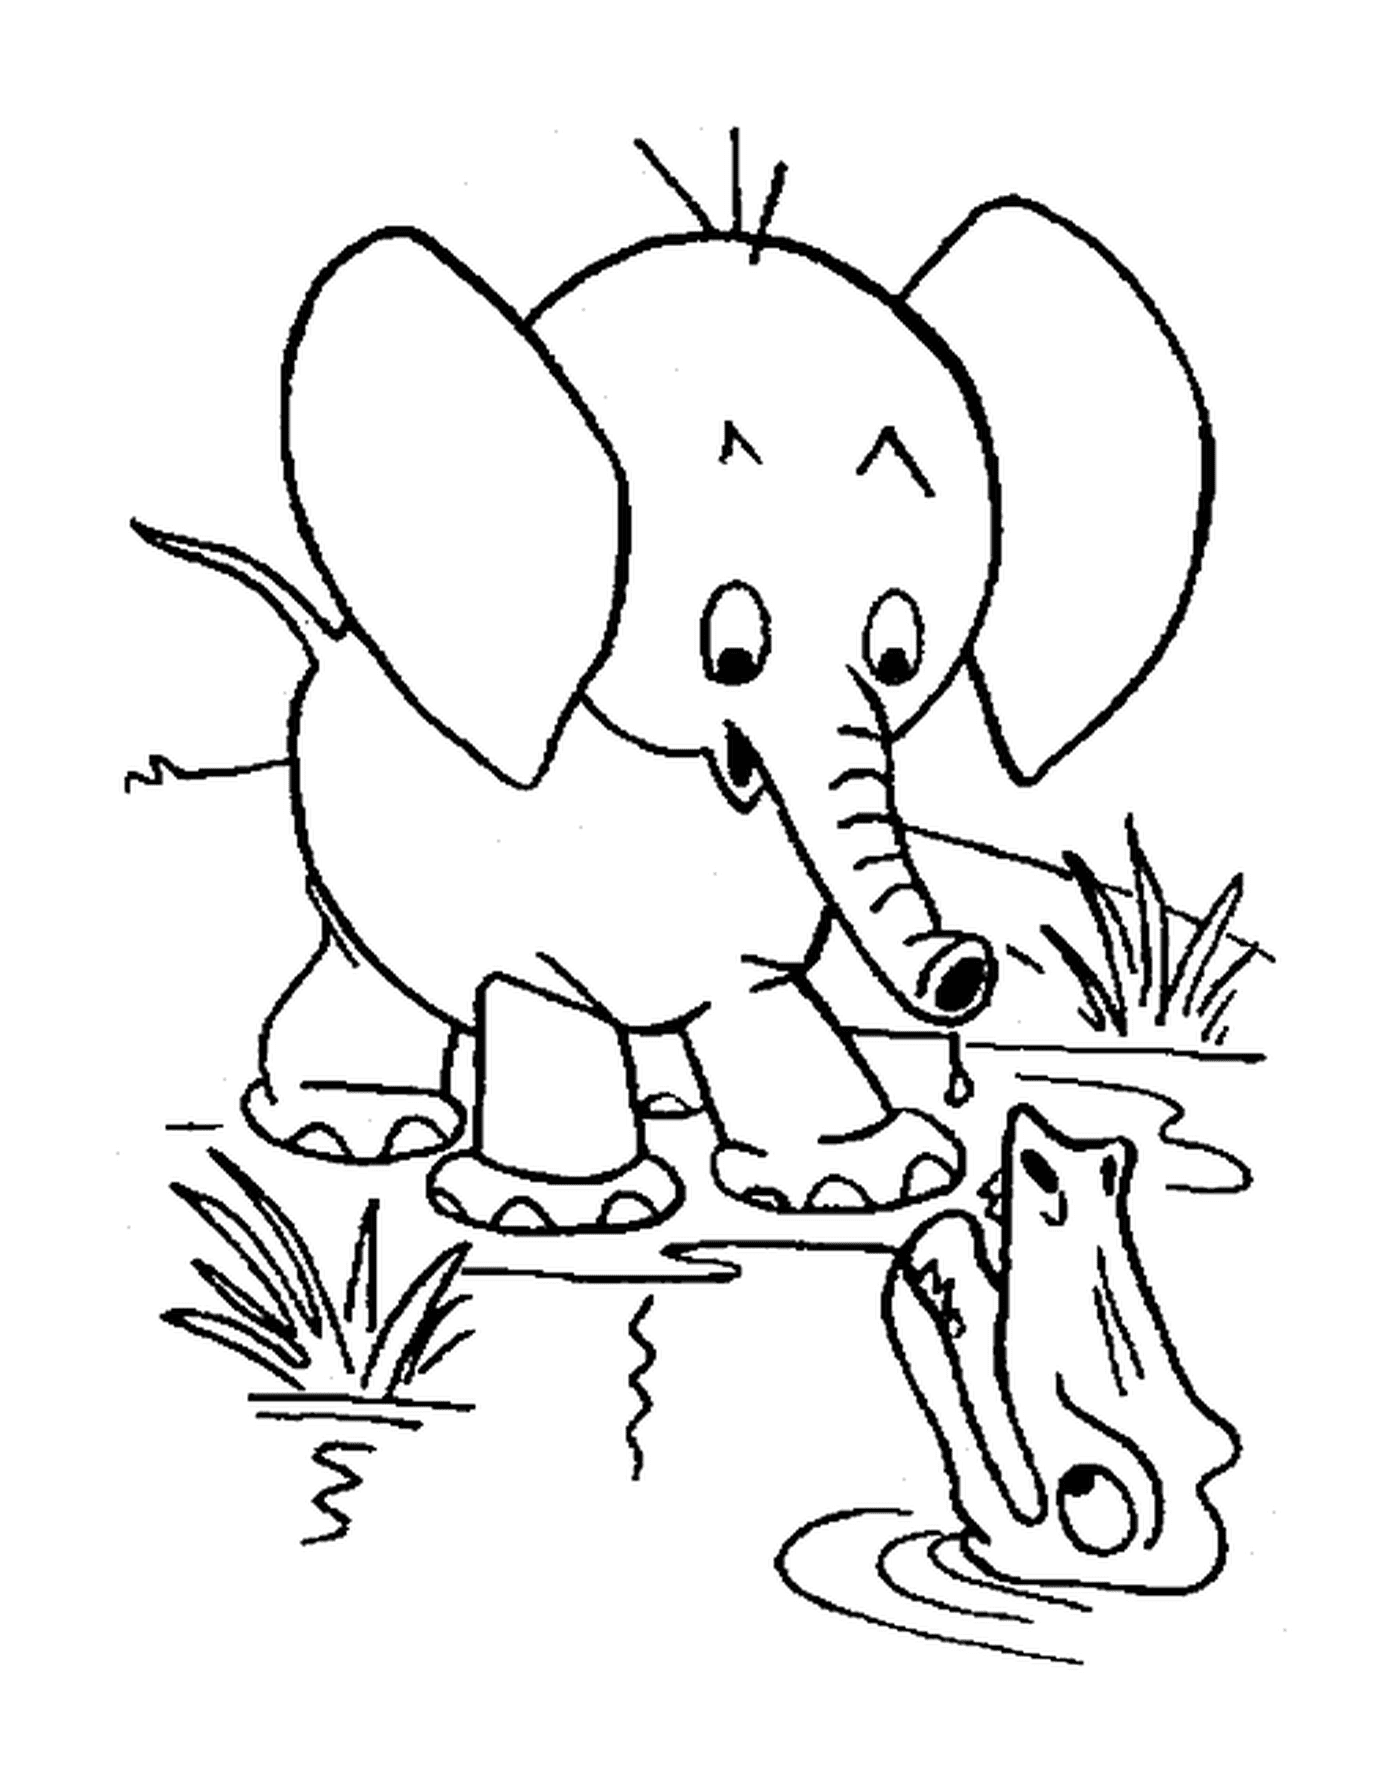  हाथी एक मगरमच्छ के साथ खड़ा रहता है 